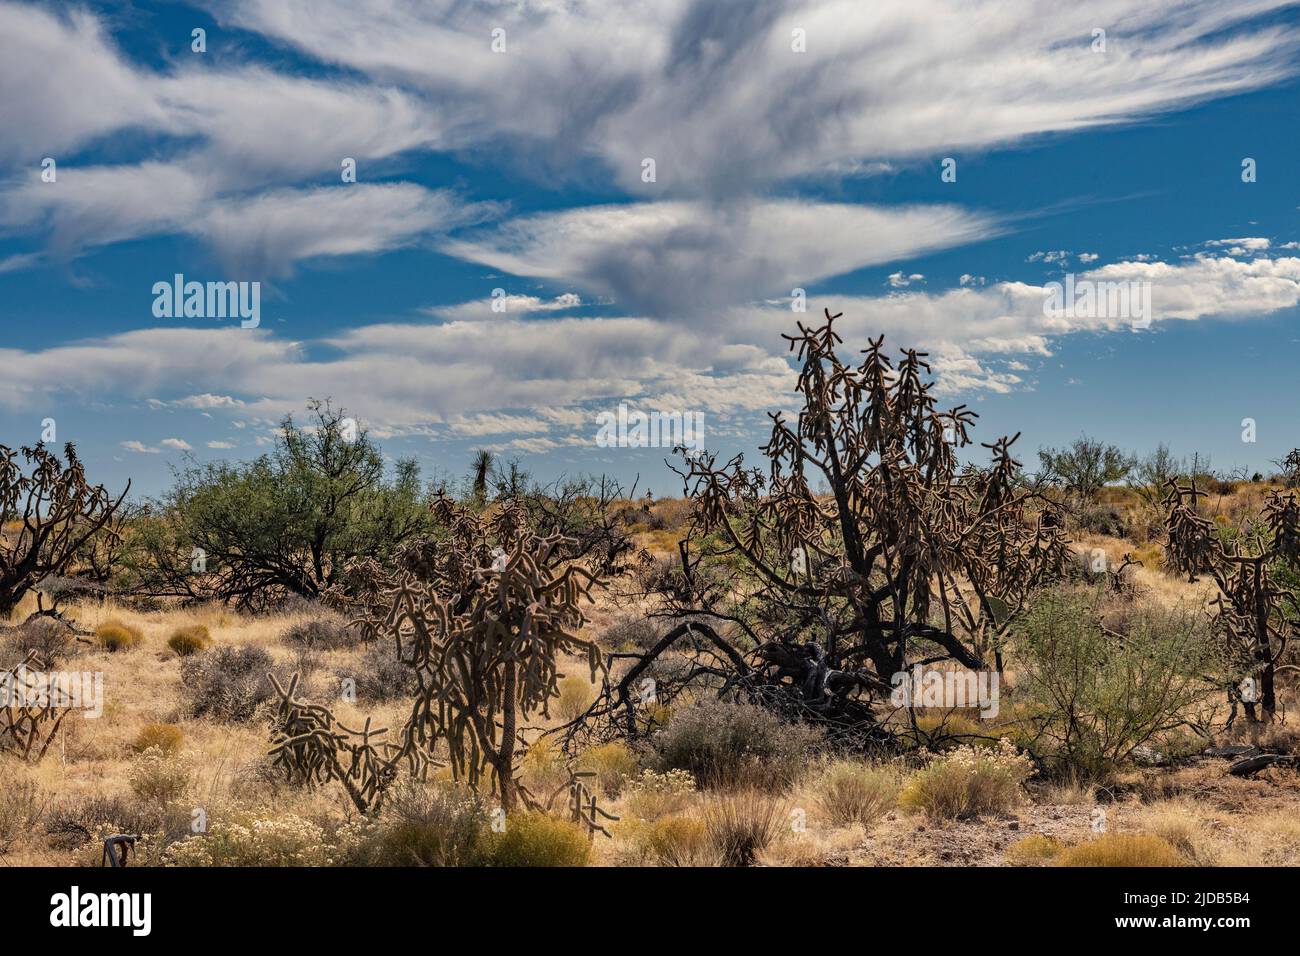 Nuages avec des traces de précipitations ou des traînées de pluie sous les nuages est connu sous le nom de Virga sur le paysage sec de l'Arizona et Cholla Cactus. Le Moistu... Banque D'Images